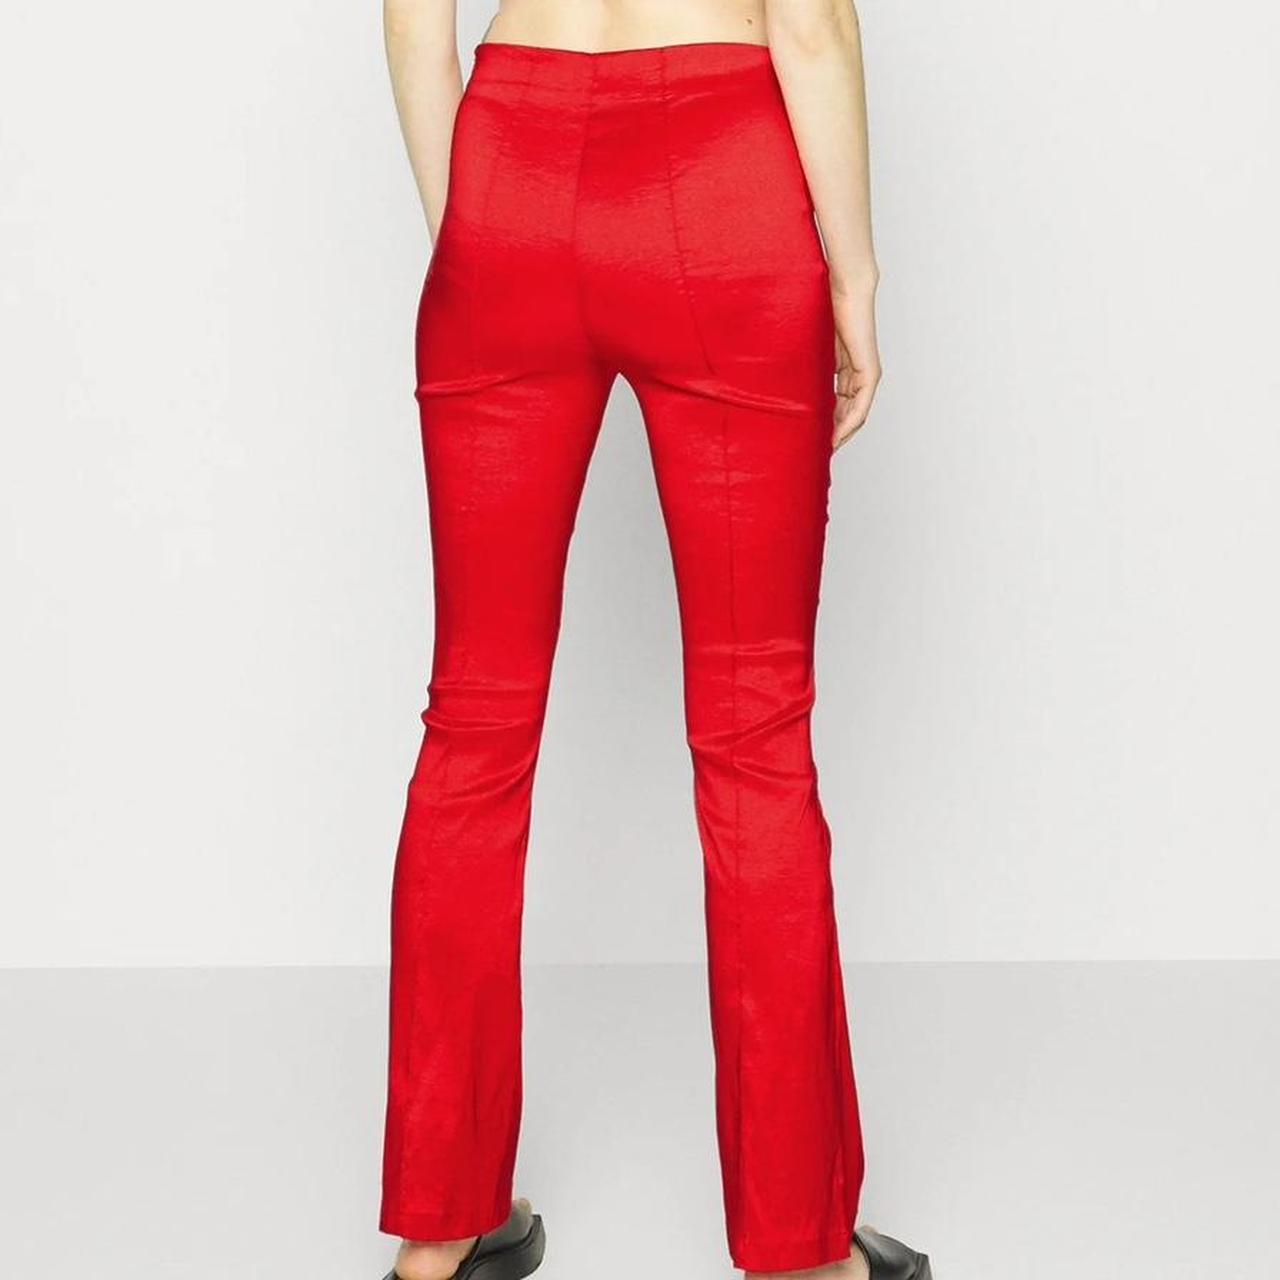 Hosbjerg Women's Red Trousers (5)